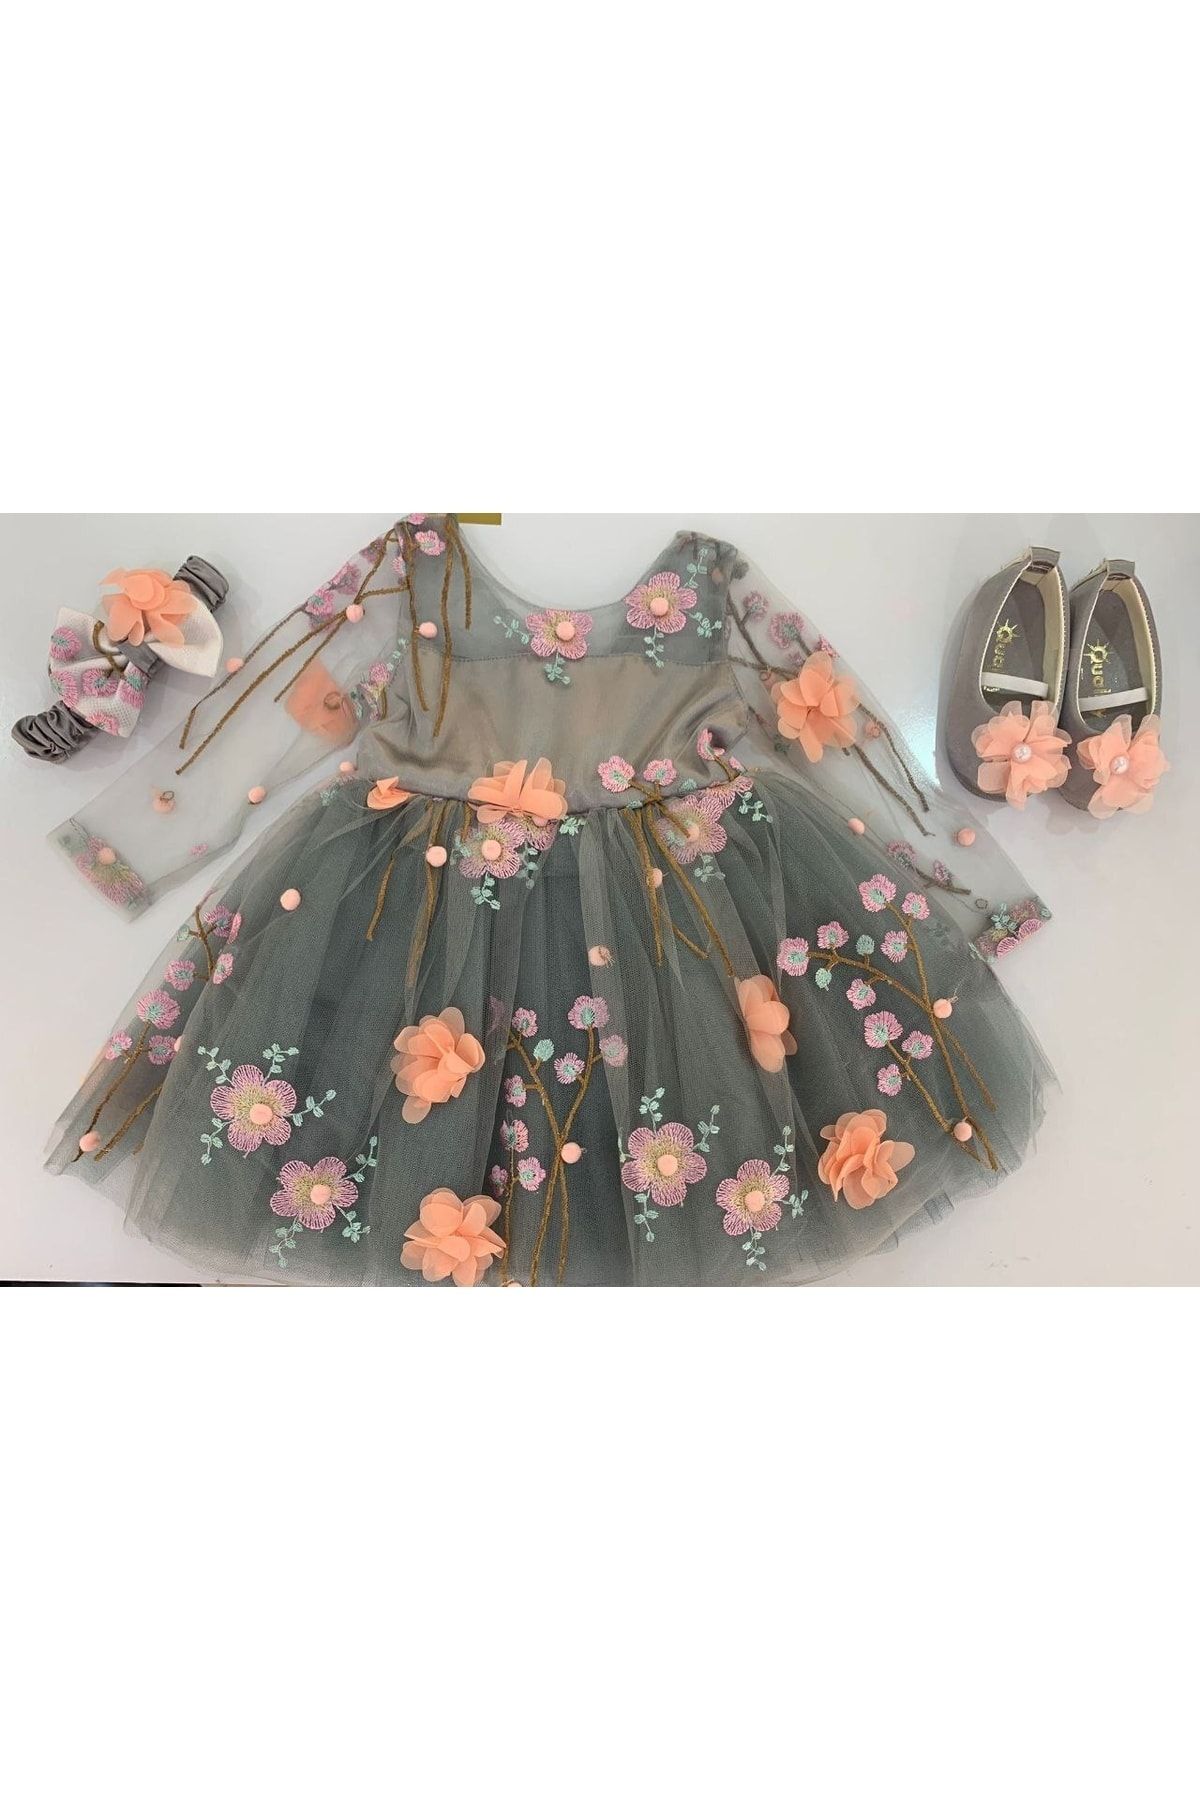 Sare Çocuk Giyim Kız Bebek Abiye Elbise Prenses Model Tütü Abiye Elbise Mevlüt Takım Bebek Doğum Günü Elbise